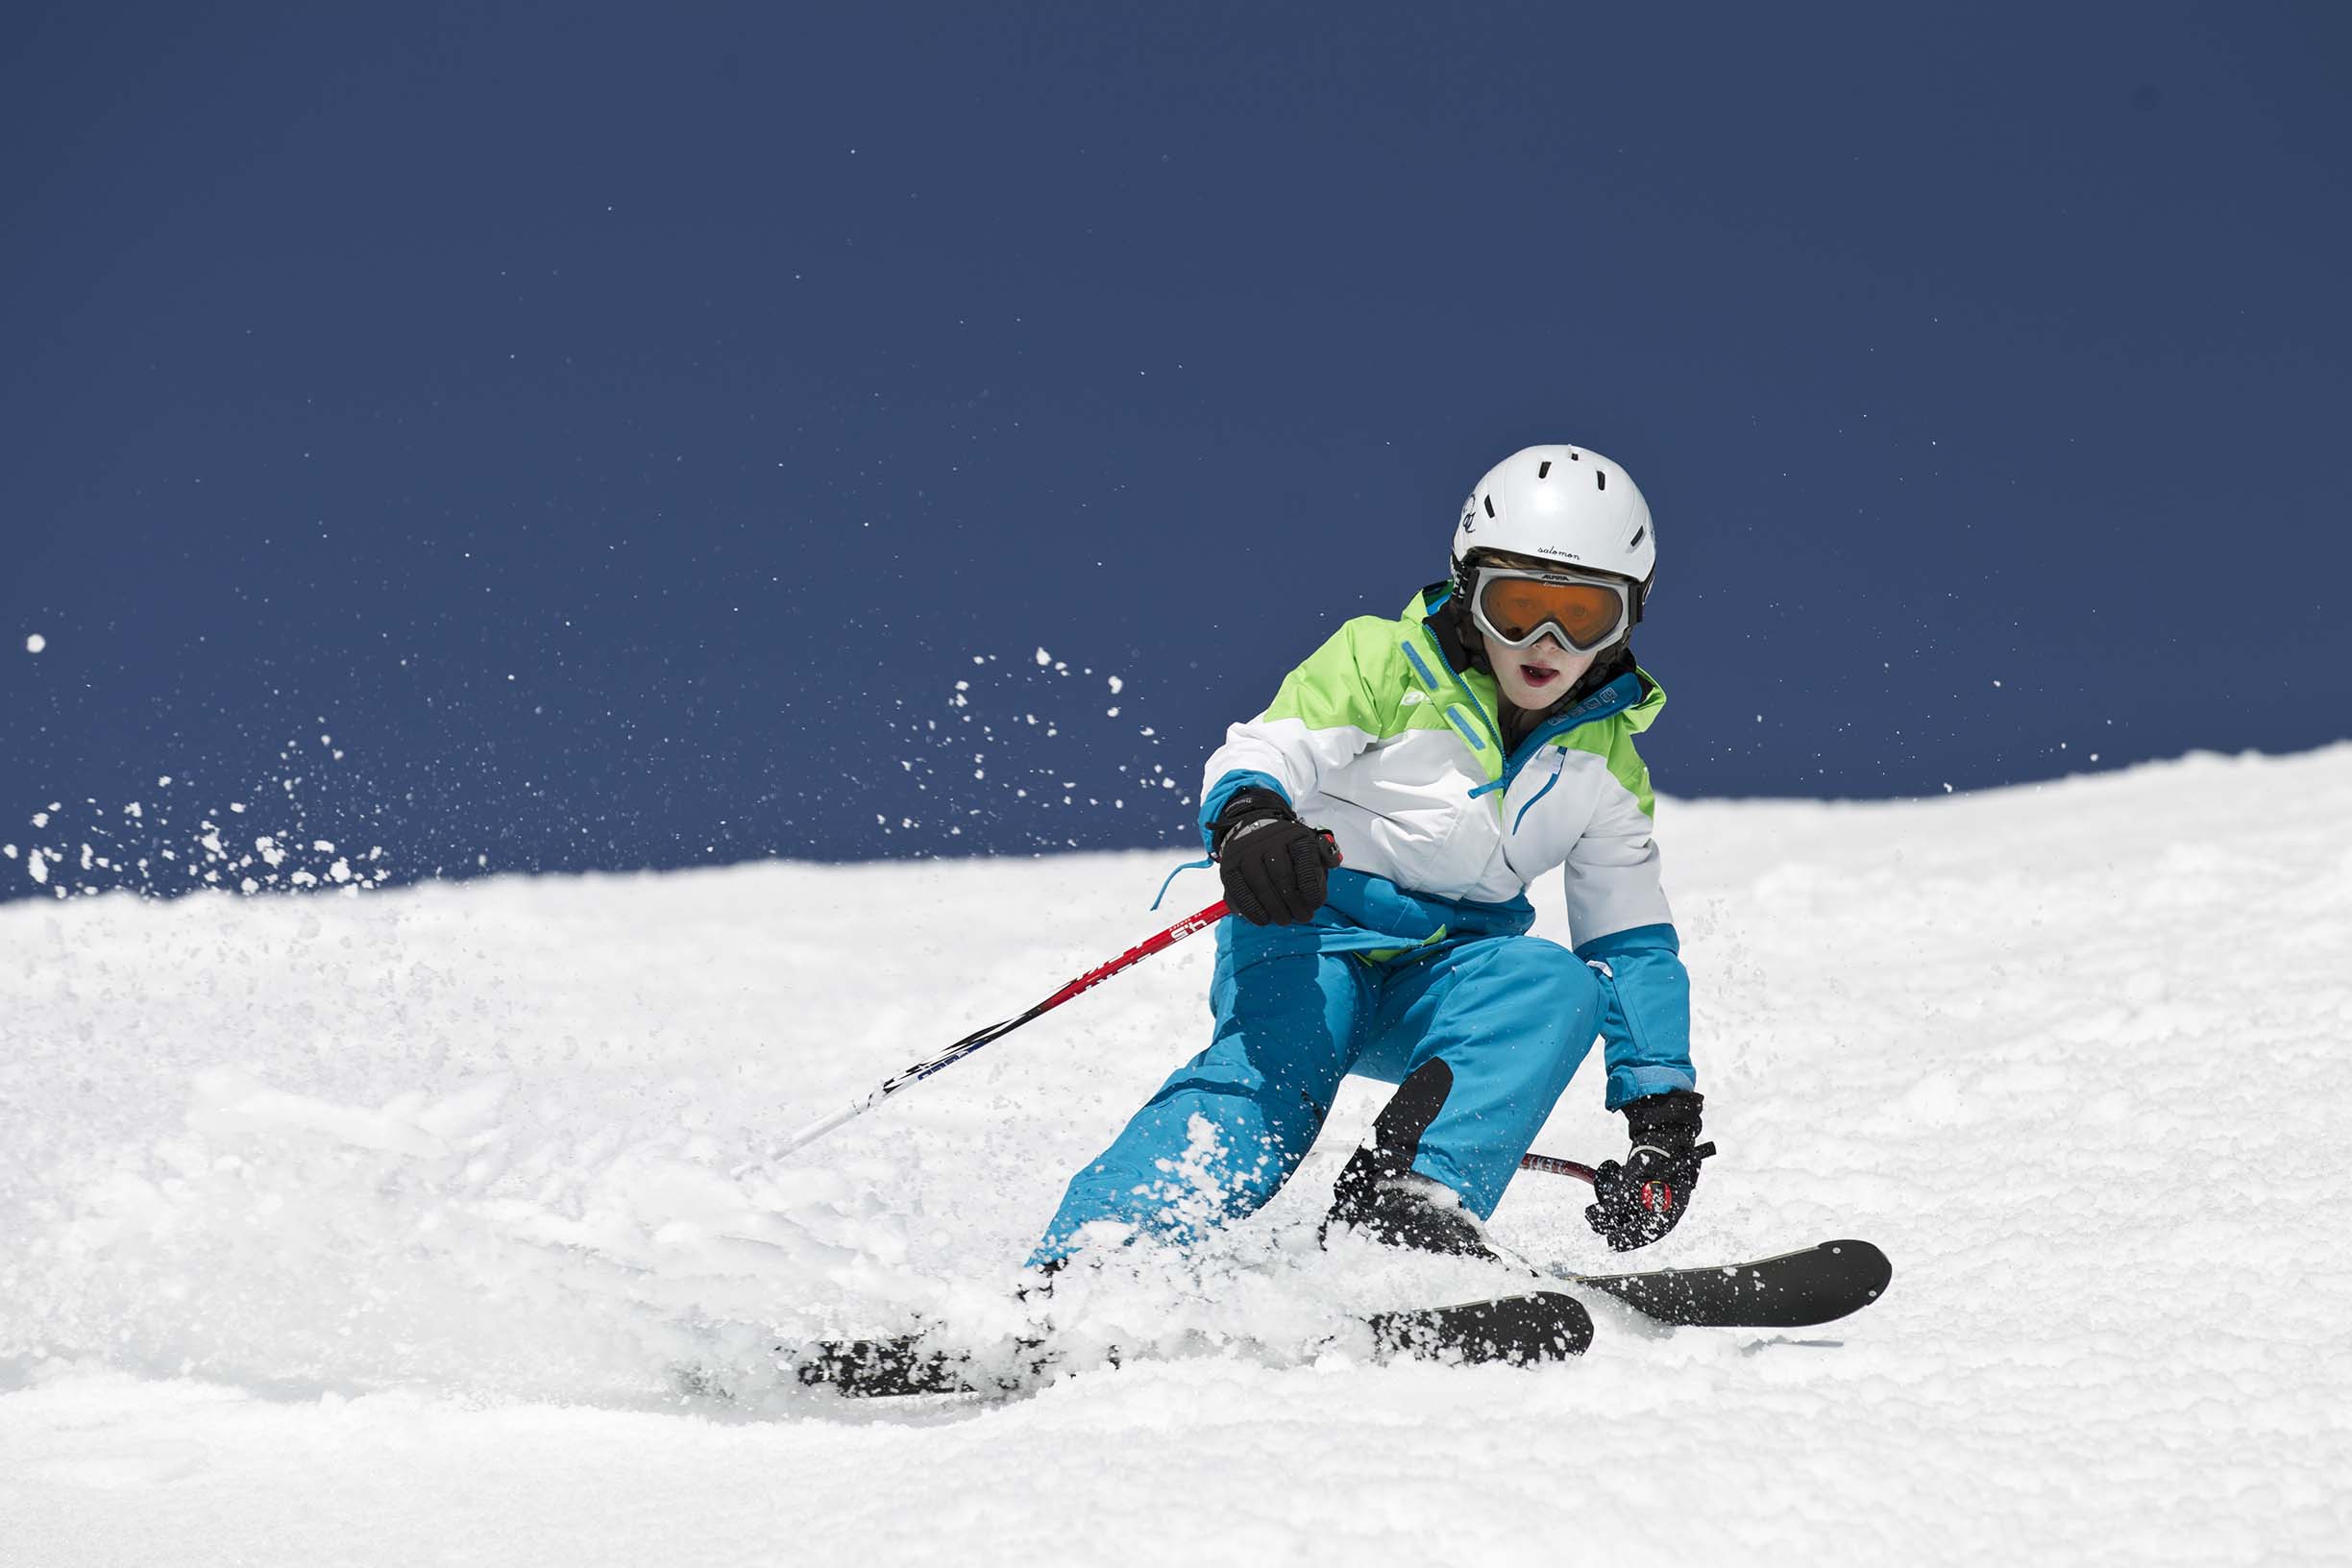 Schnee staubt auf, wenn der junge Skifahrer, perfekt ausgestattet mit Skianzug und Helm, den Skihang rasant und elegant bezwingt.